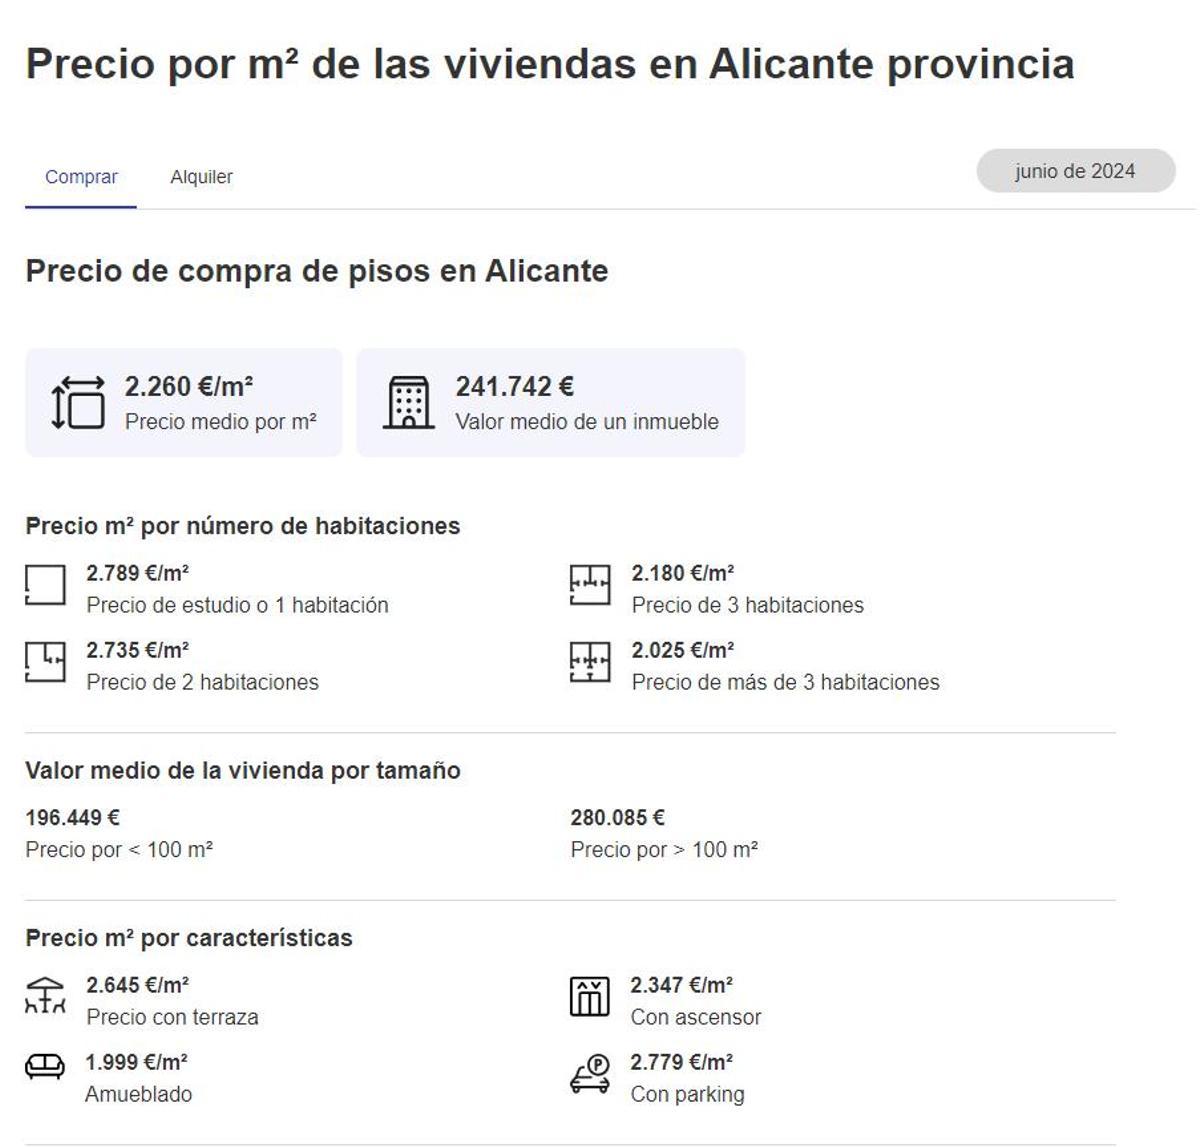 Precio vivienda segunda mano provincia de Alicante en junio 2024